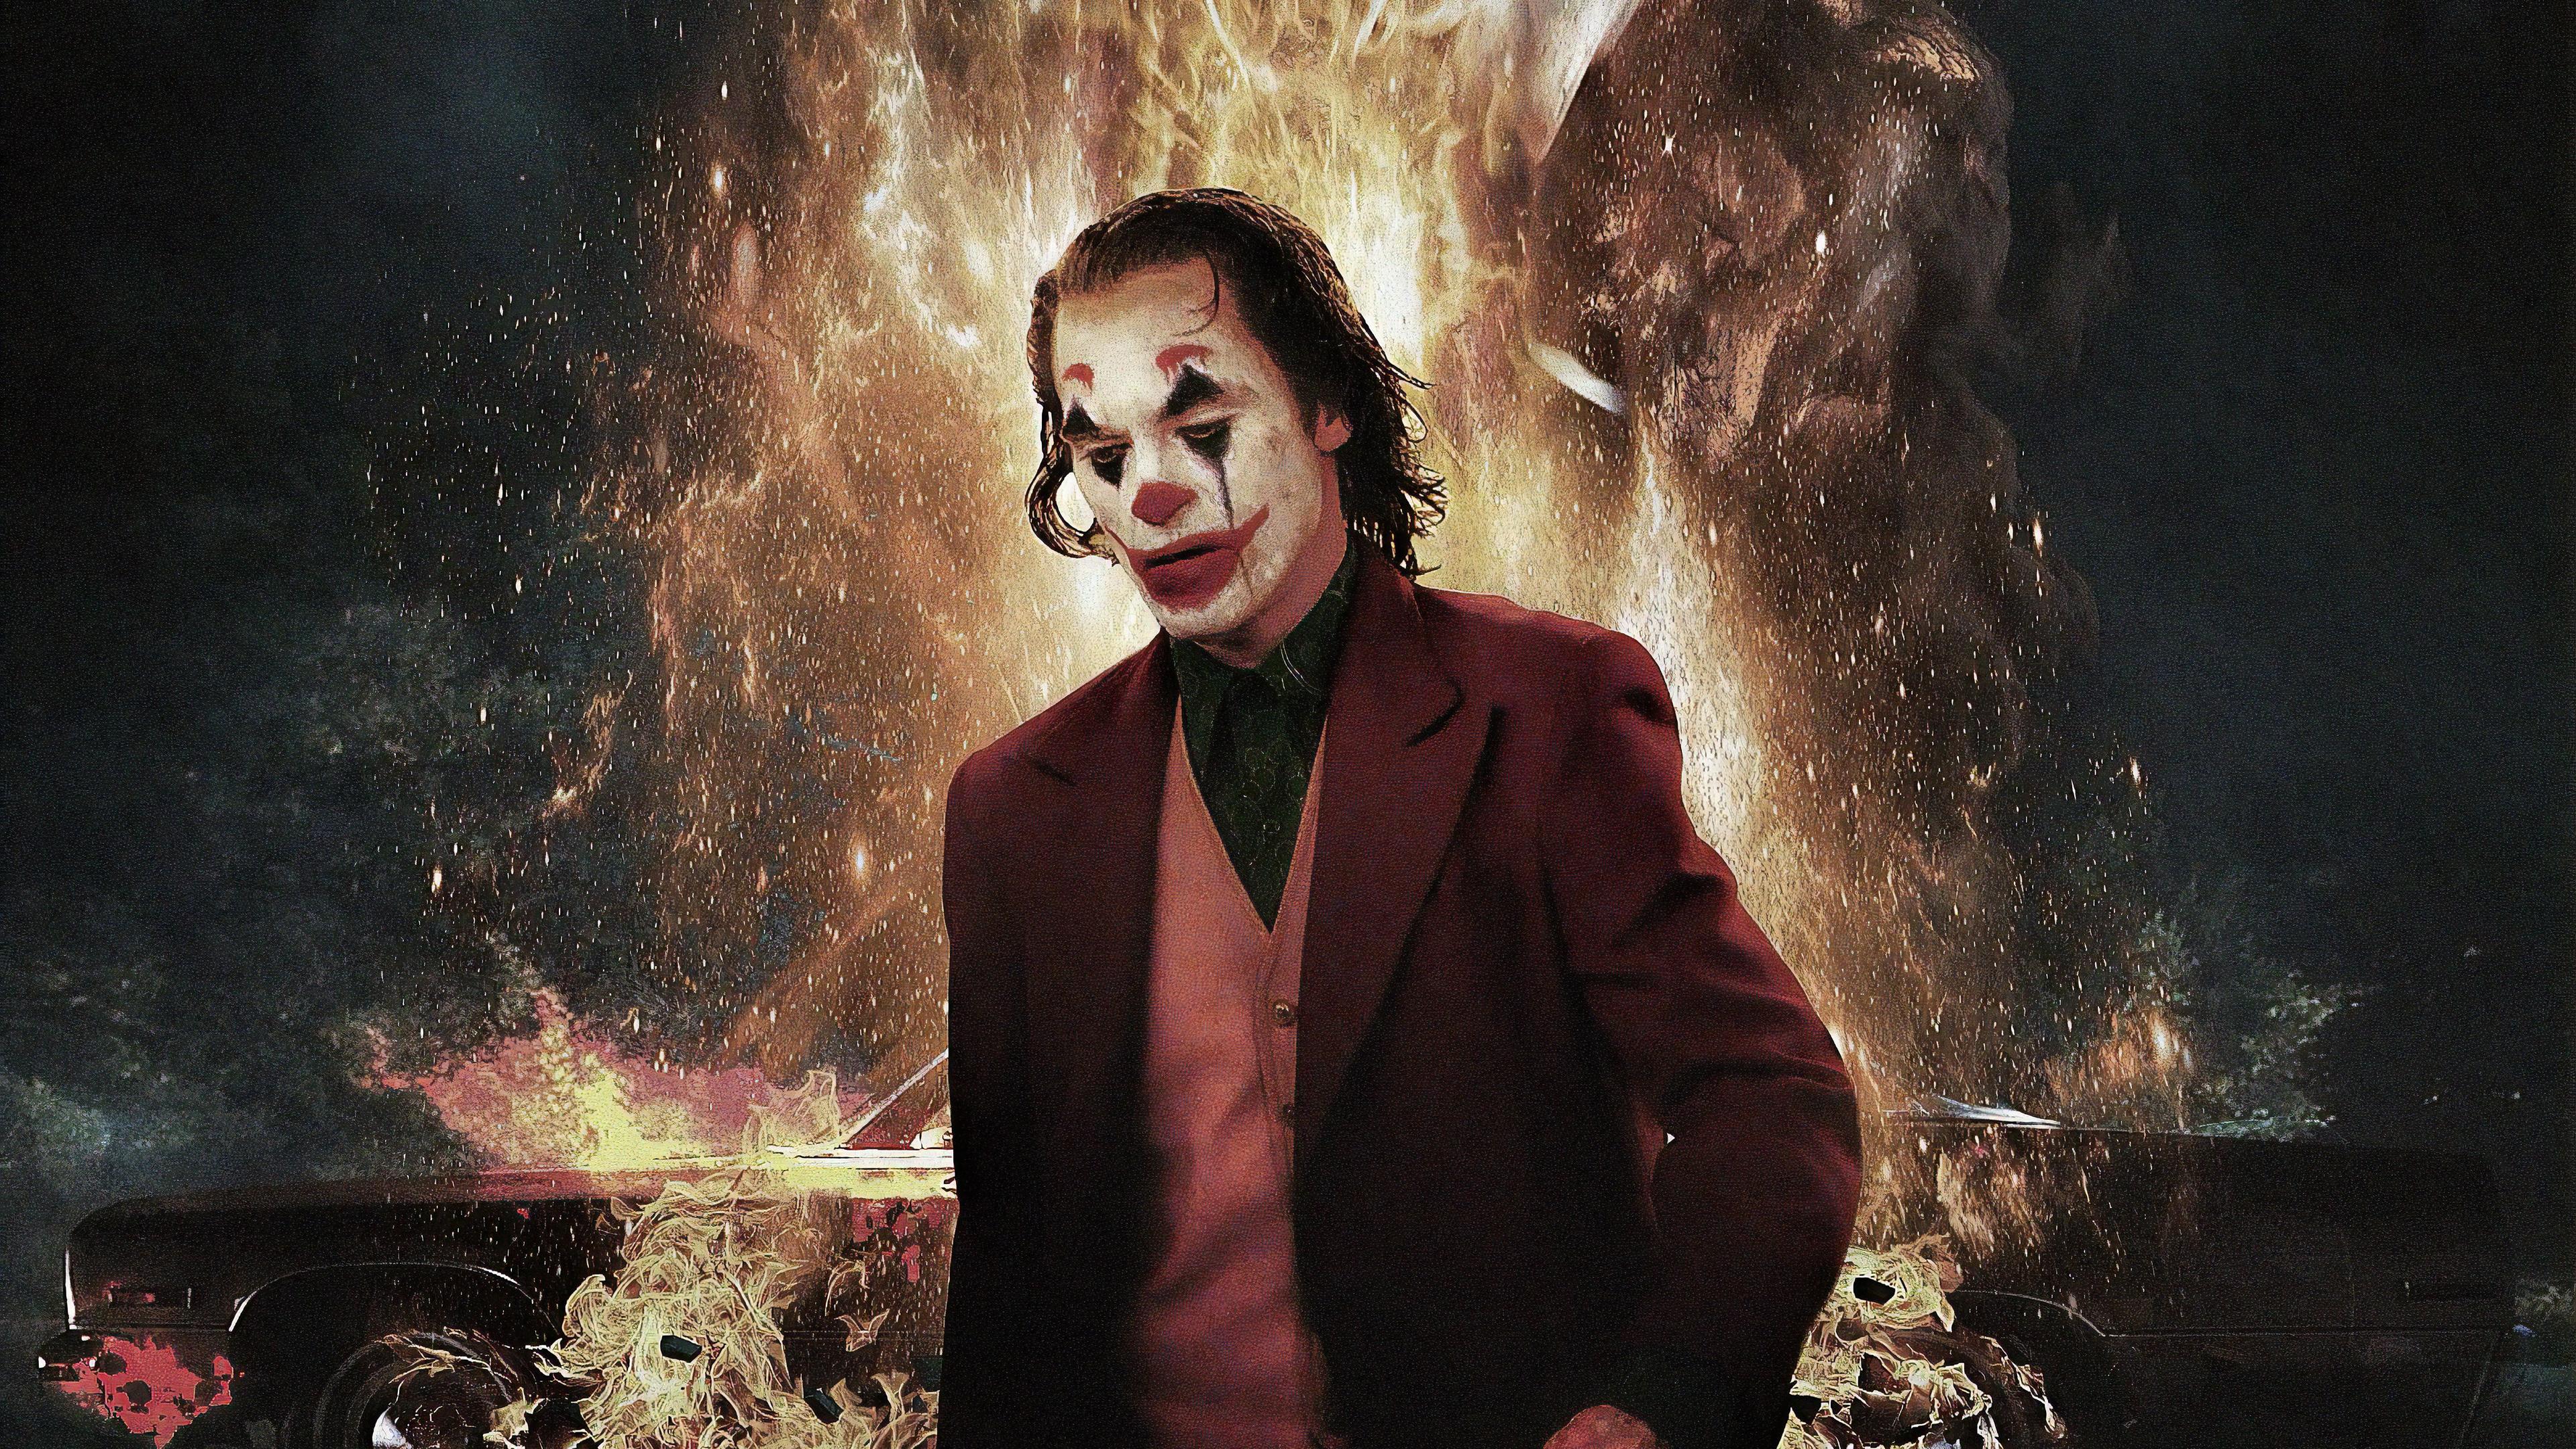 Wallpaper 4k Joker 2019 Movie New 2019 movies wallpaper, 4k